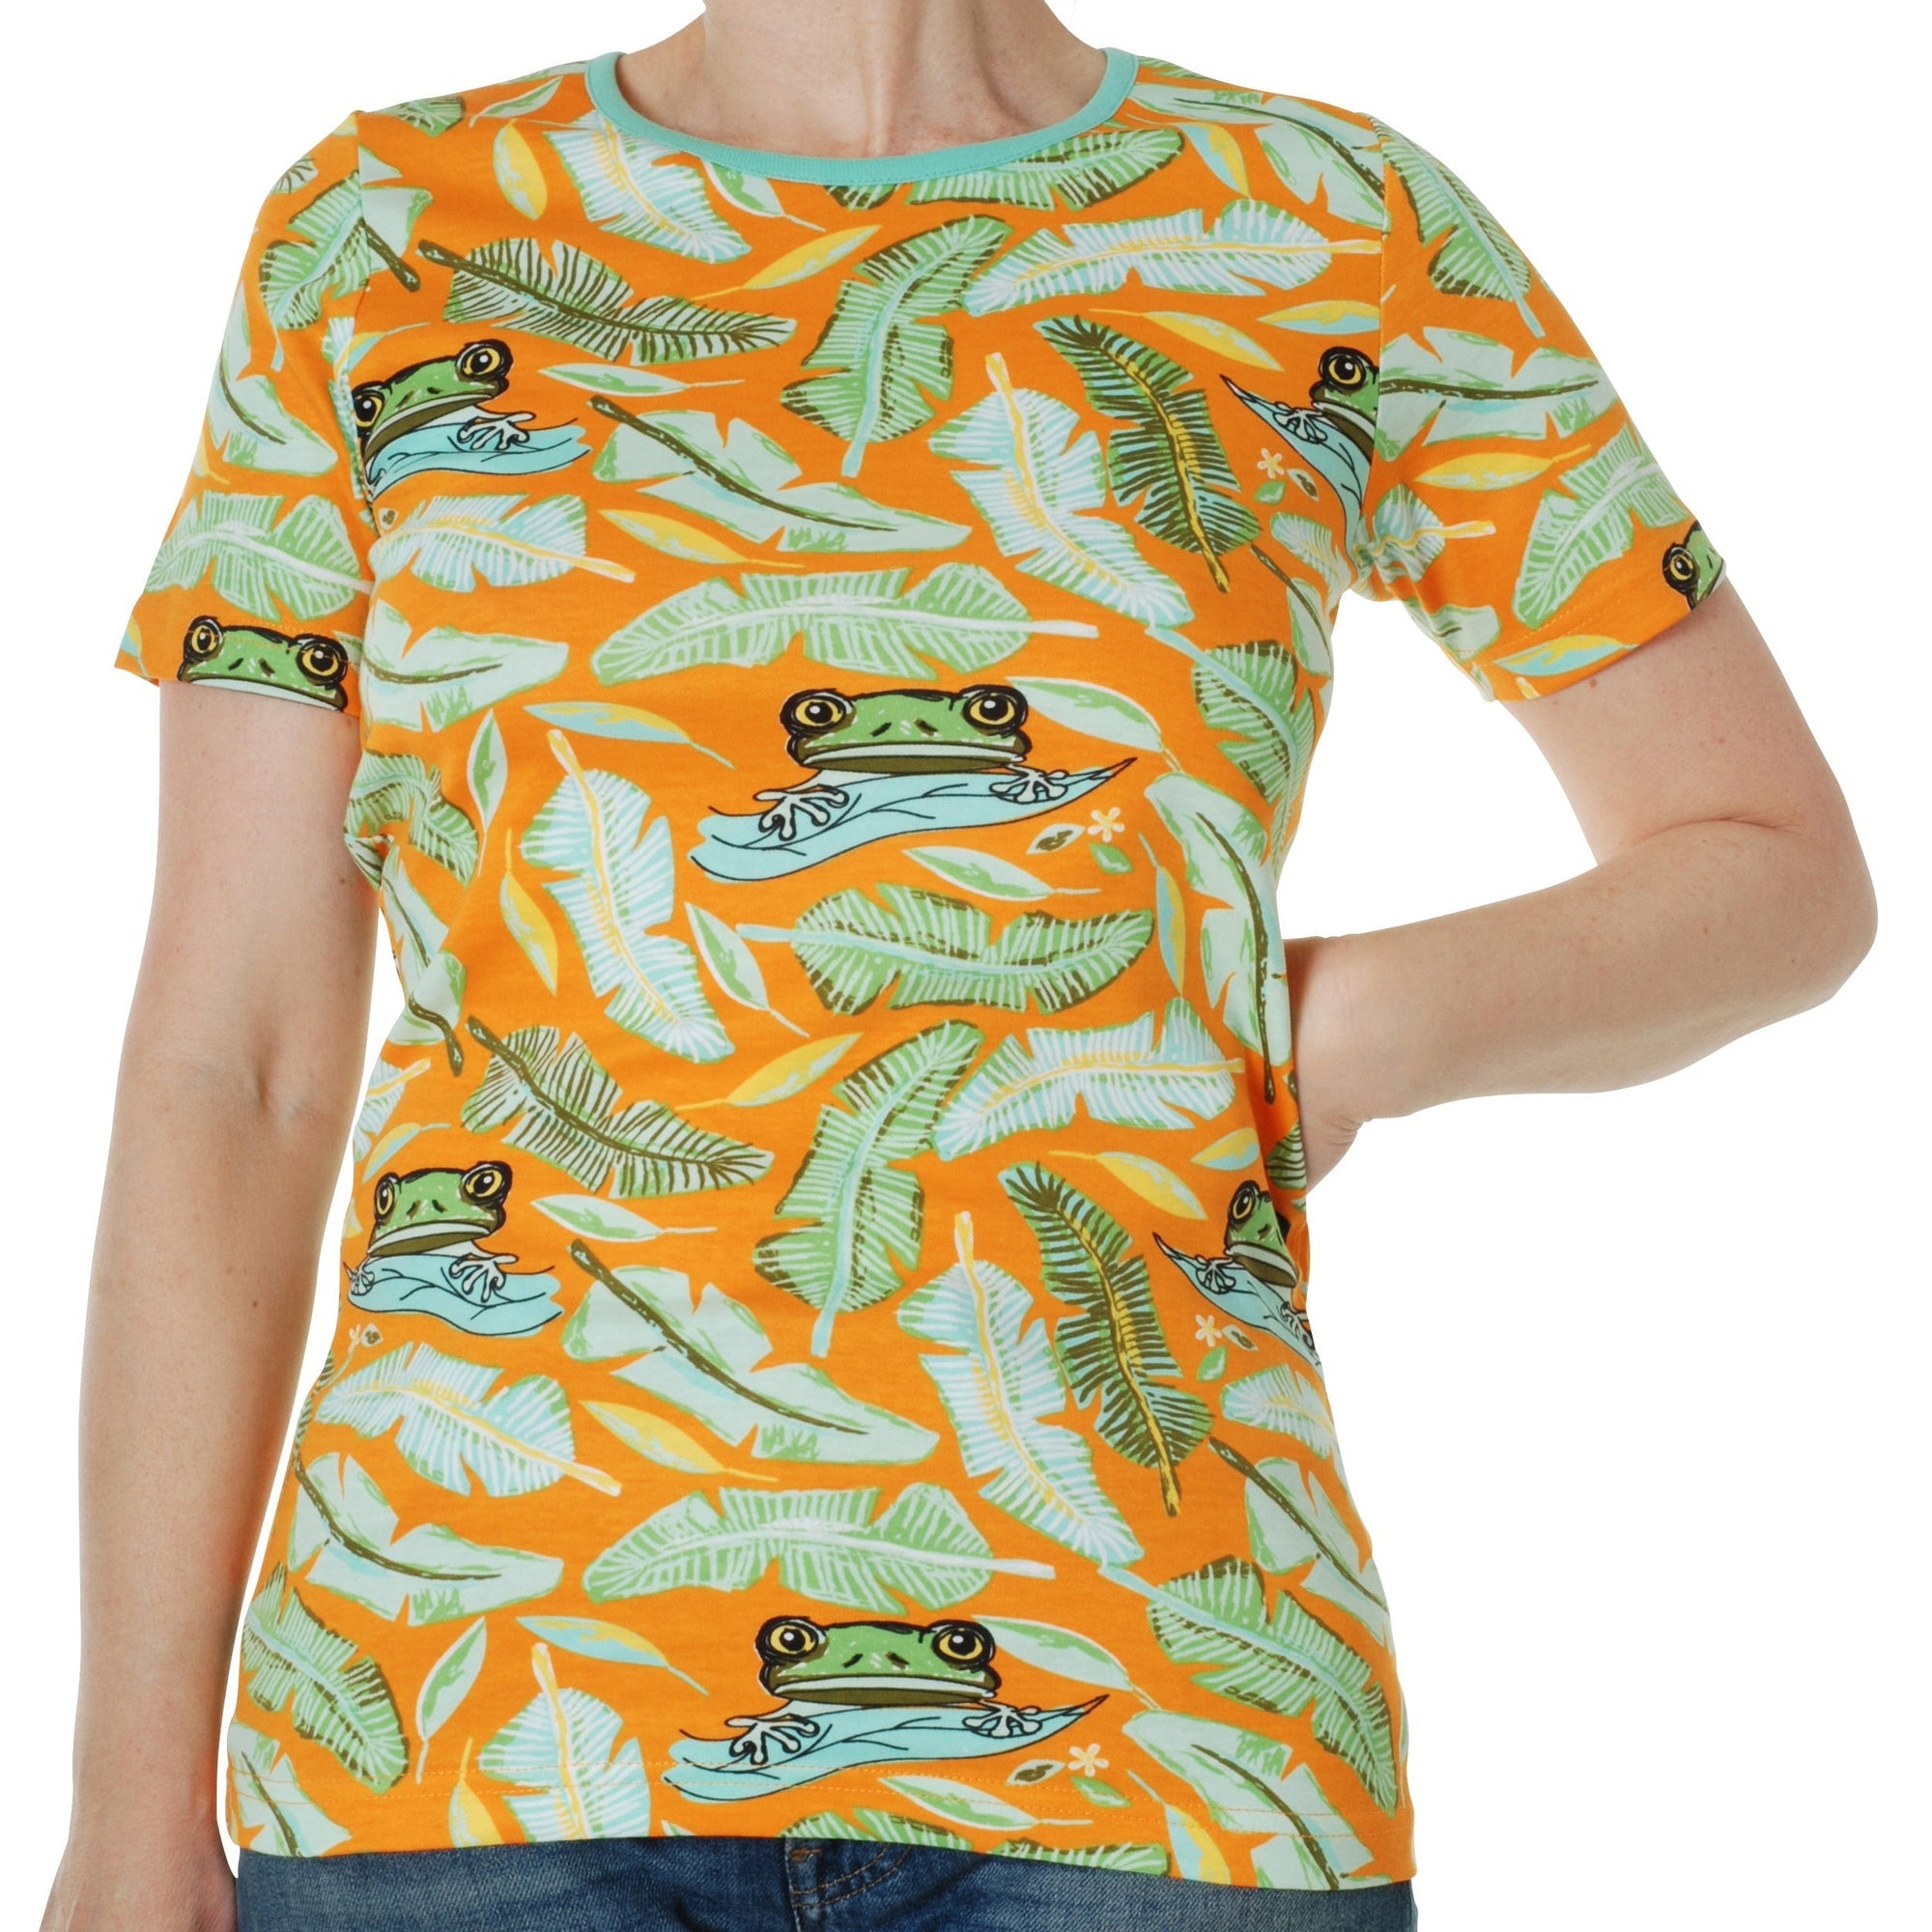 Adult's Frog - Orange Short Sleeve Shirt - 2 Left Size M & L-Duns Sweden-Modern Rascals